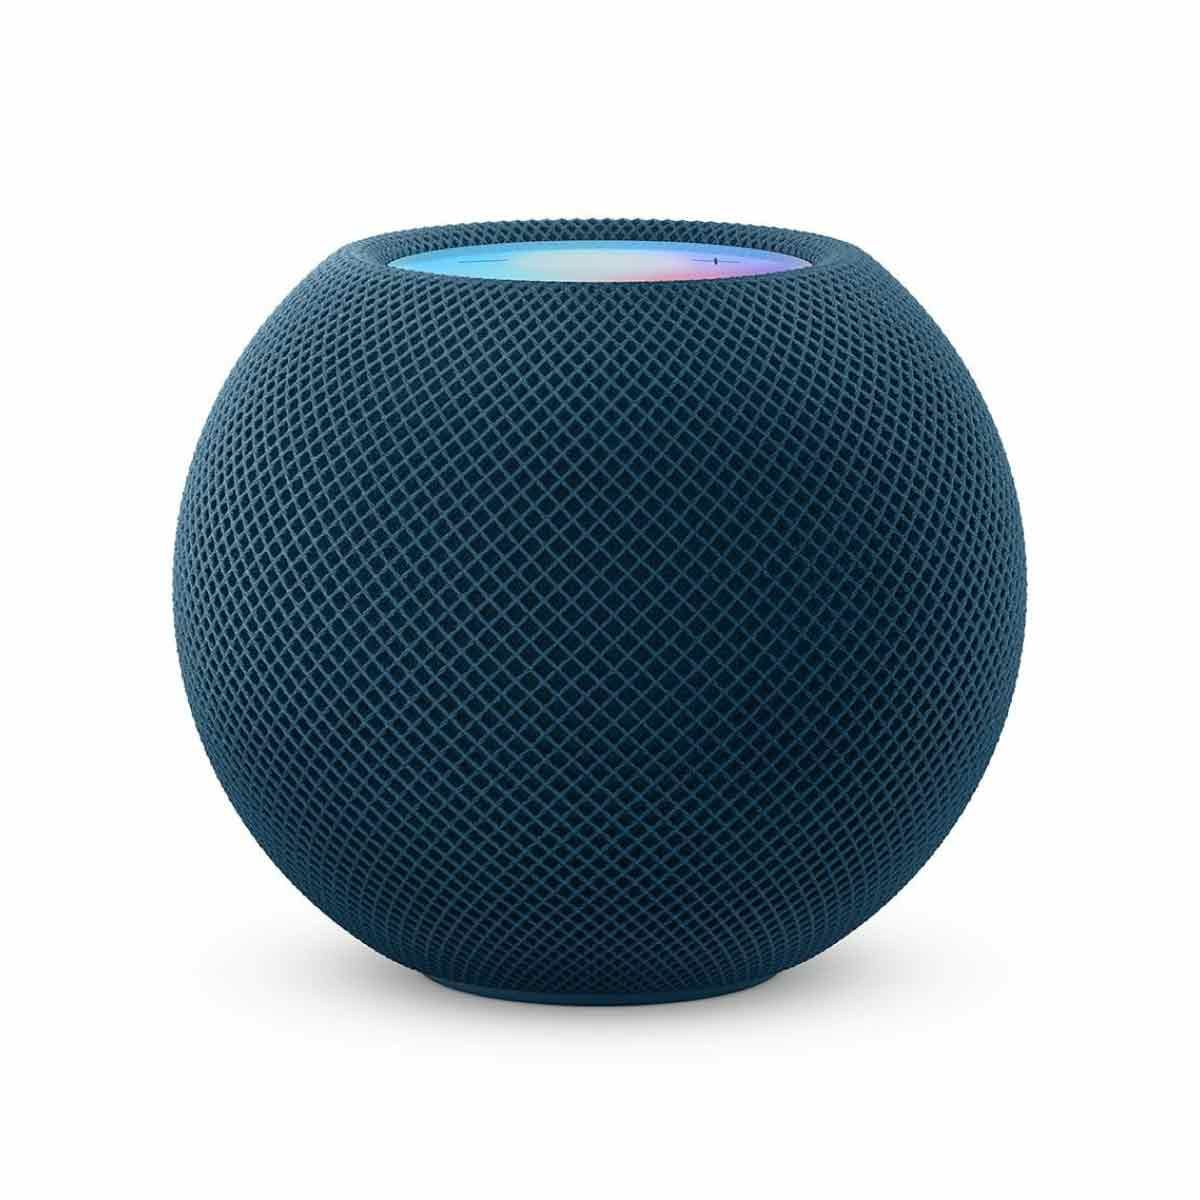 Apple HomePod mini - สีน้ำเงิน